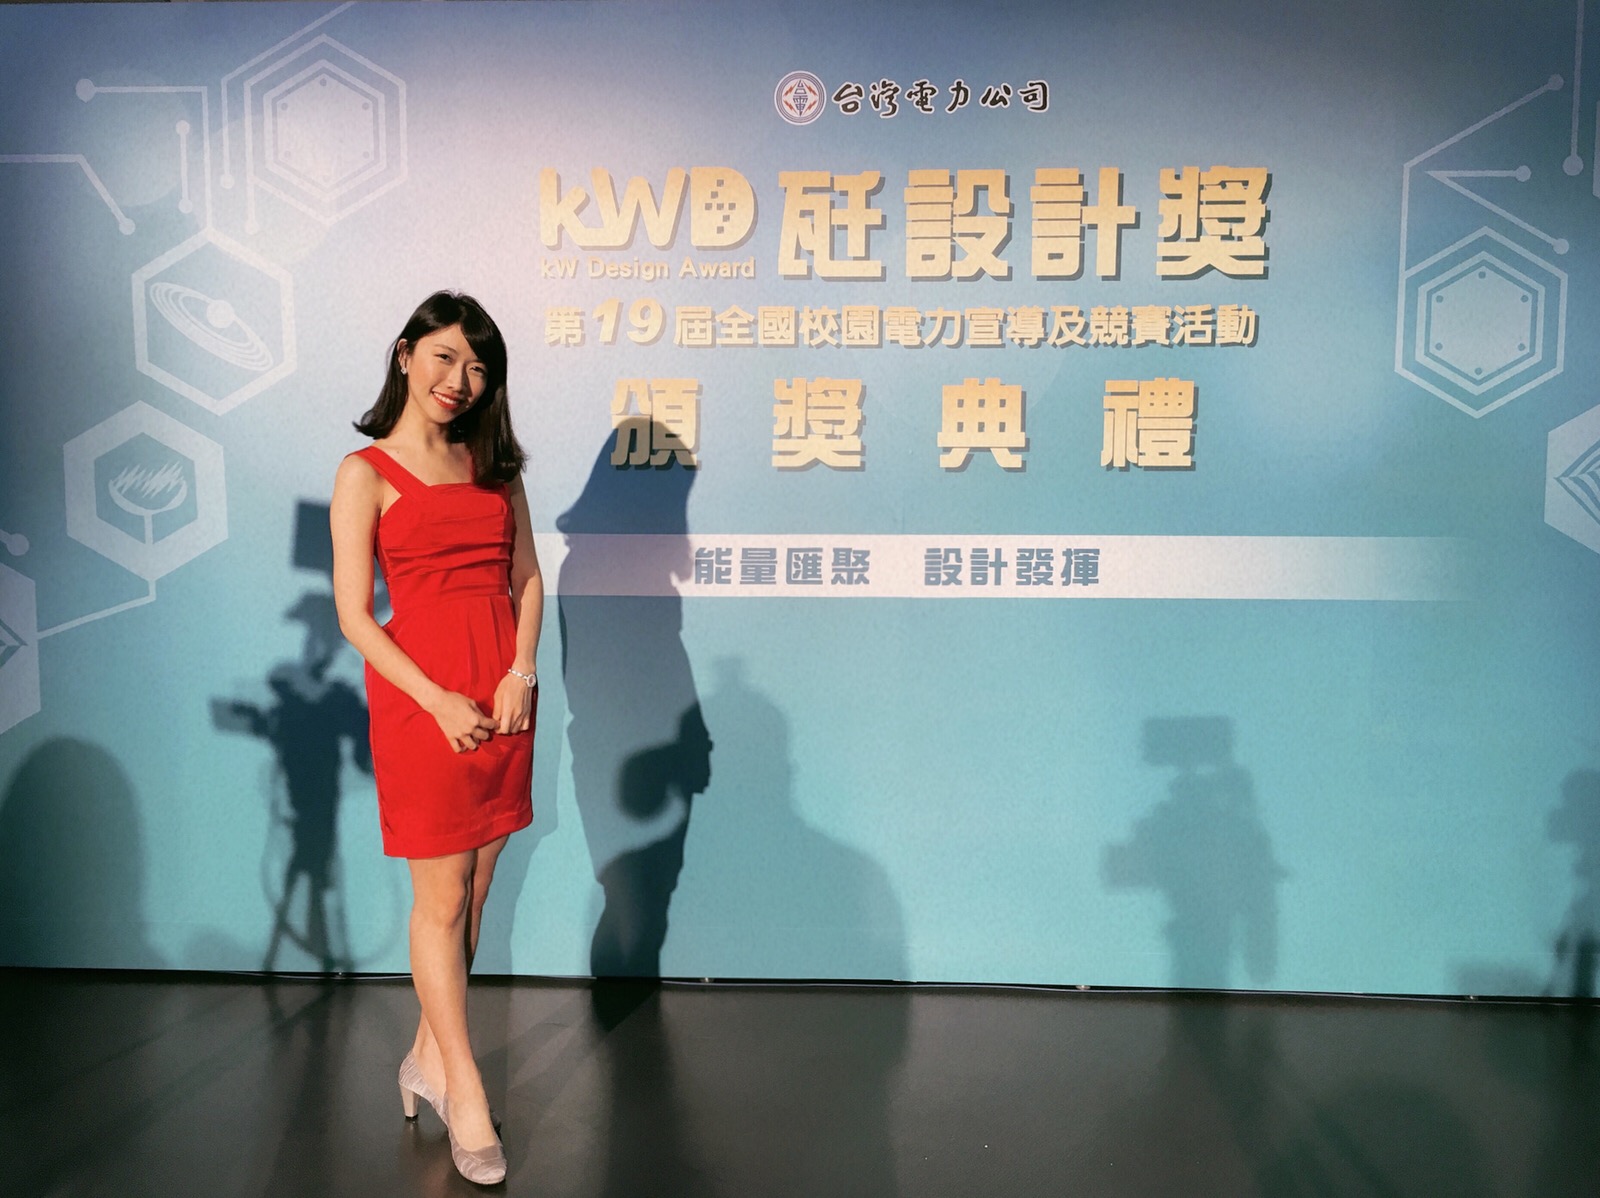 王純蕙Tiffany主持人工作紀錄: 台灣電力公司 瓩設計獎 頒獎典禮 活動主持